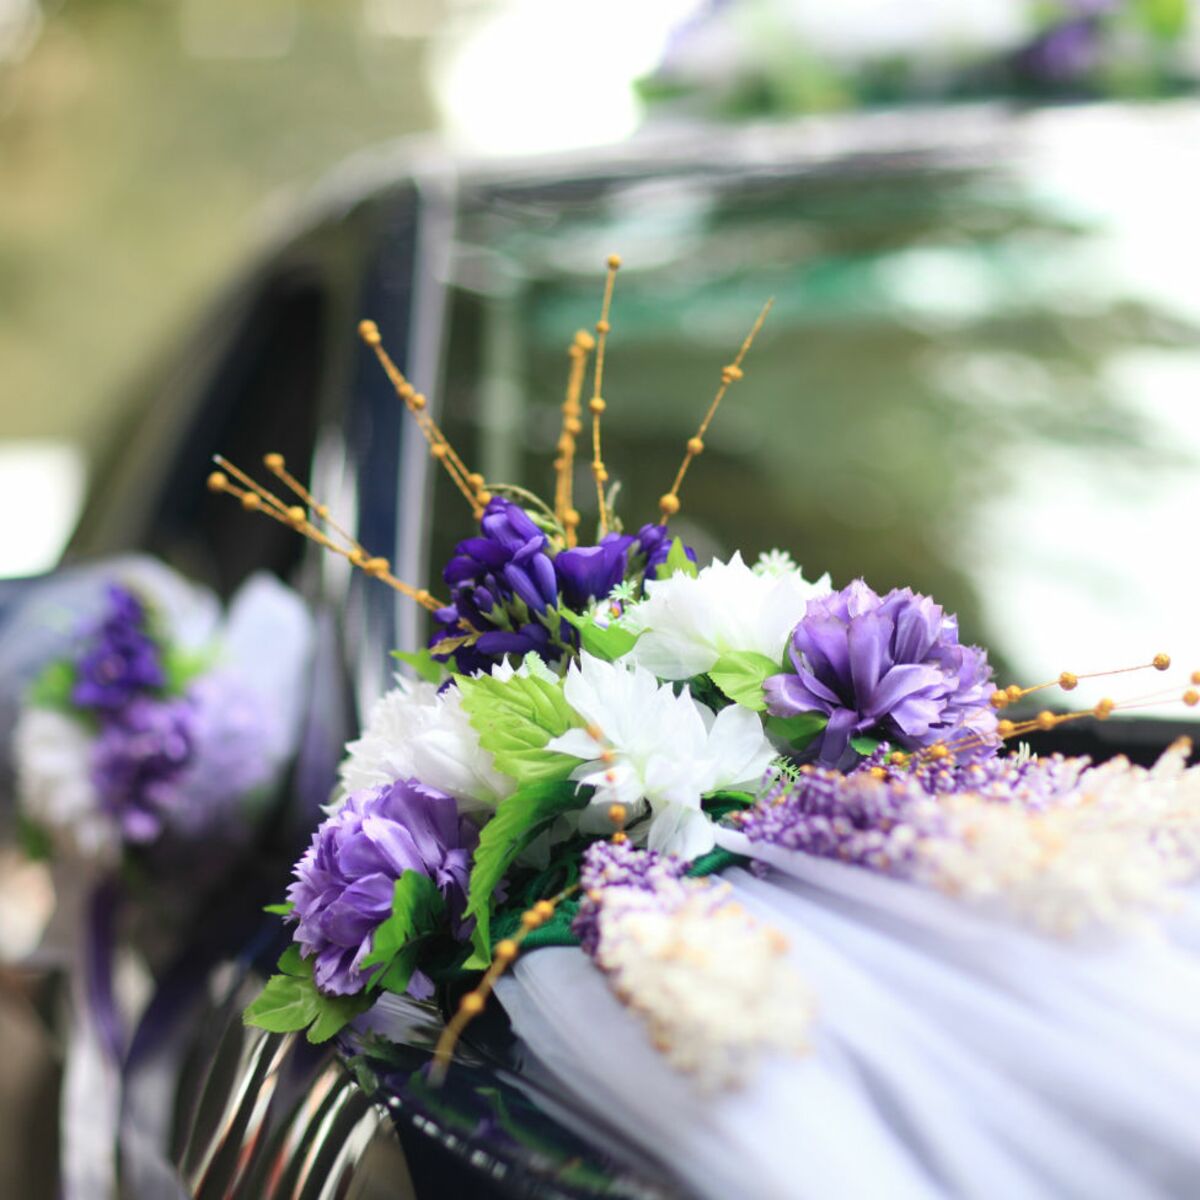 Comment décorer sa voiture pour un mariage ? : Femme Actuelle Le MAG